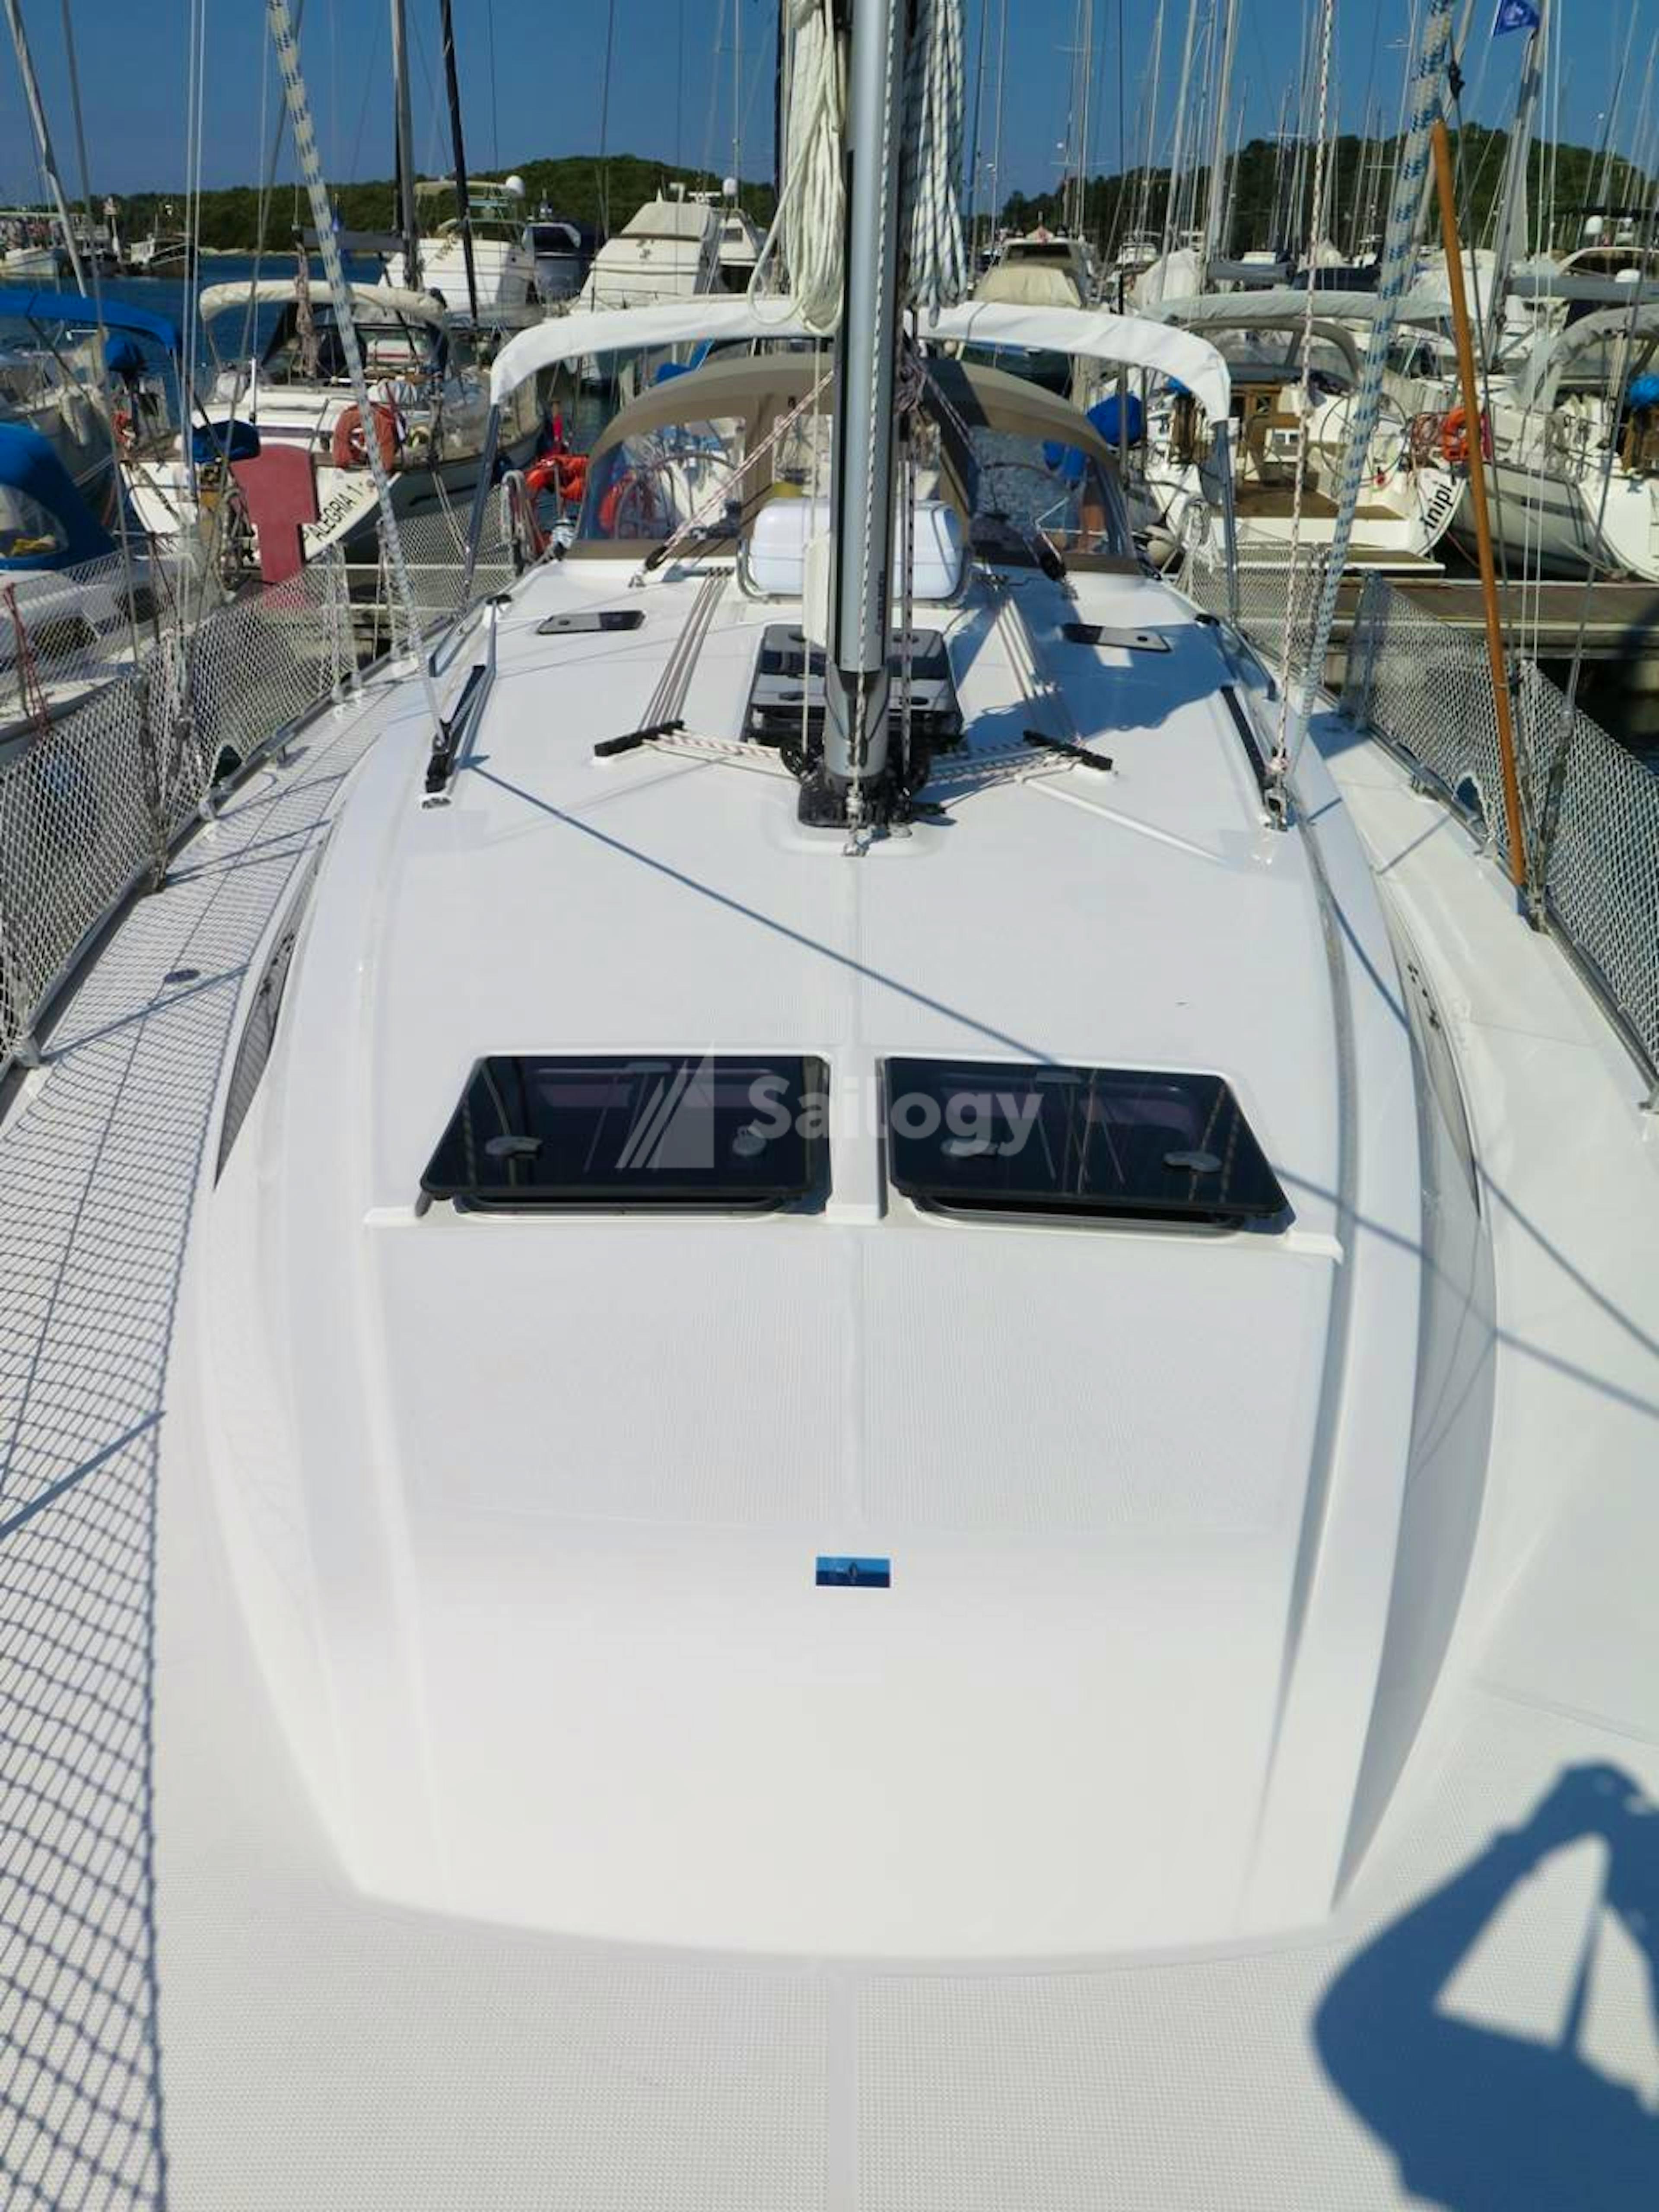 Bavaria Cruiser 46